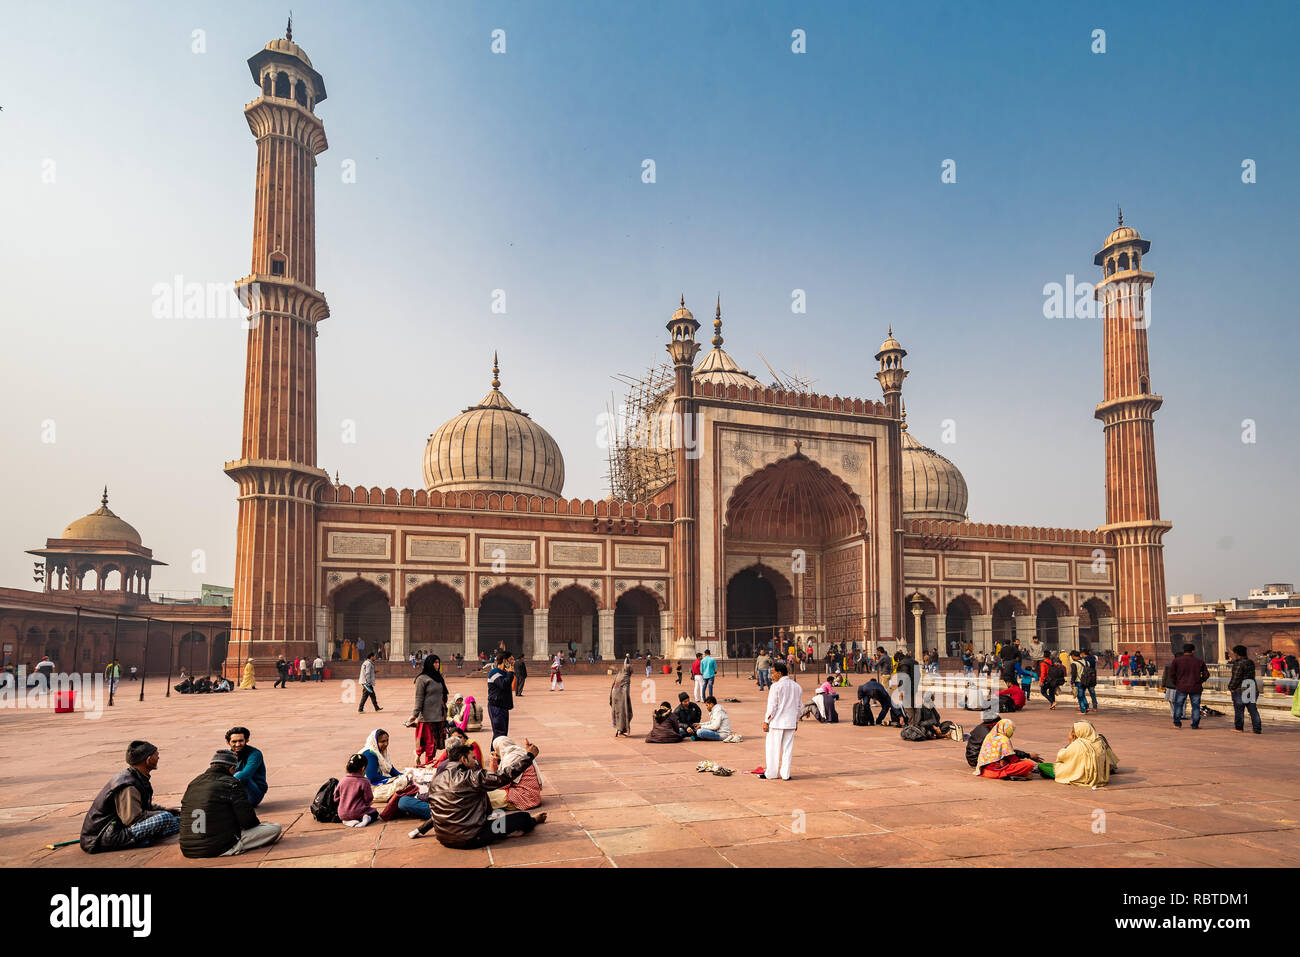 La cour principale dans Jama Masjid - un très célèbre mosquée de Delhi, Inde Banque D'Images